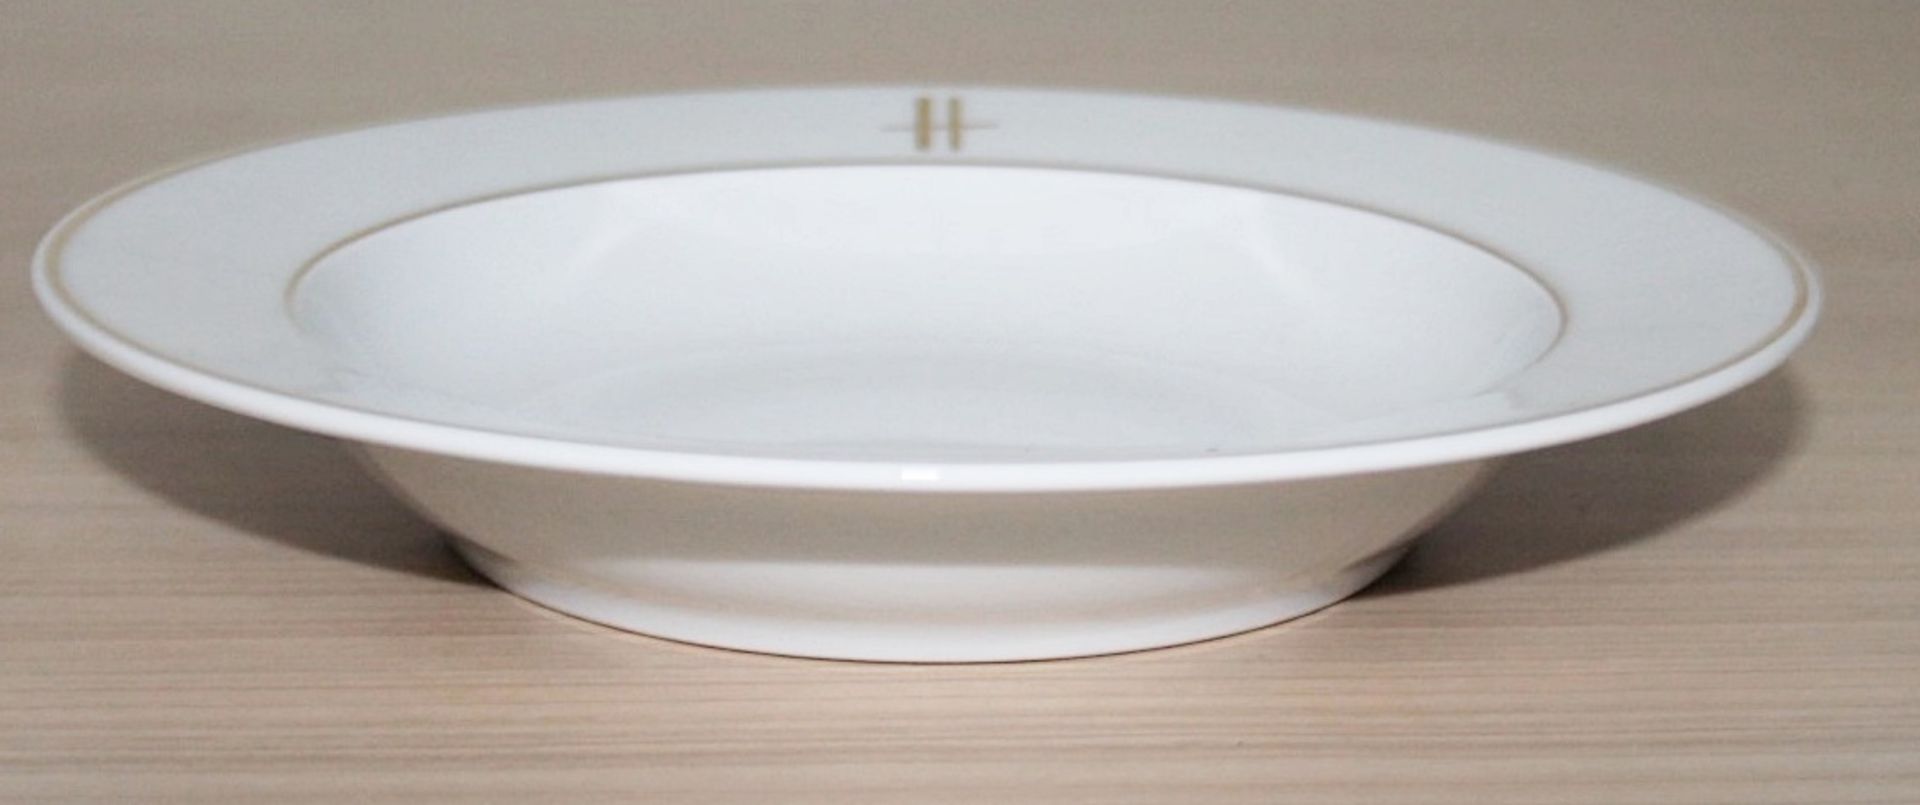 40 x PILLIVUYT Porcelain 21.7cm Small Commercial Porcelain Pasta / Soup Bowls With 'Famous Branding' - Image 4 of 5